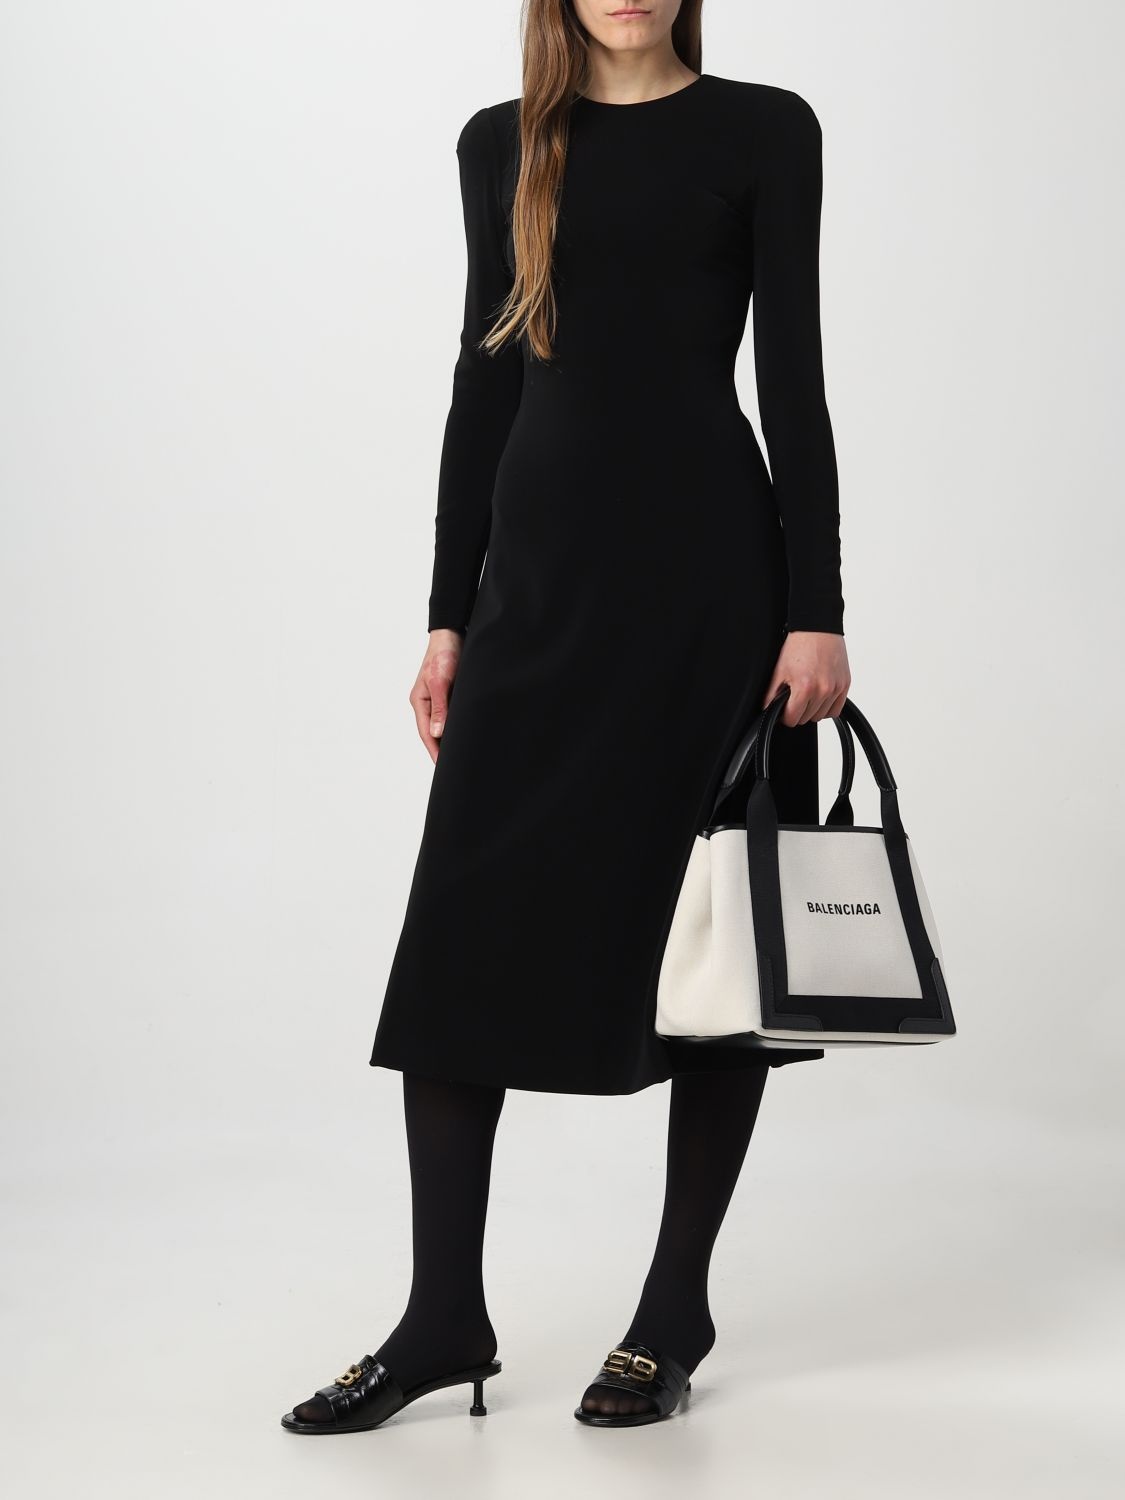 Balenciaga handbag for woman - 2